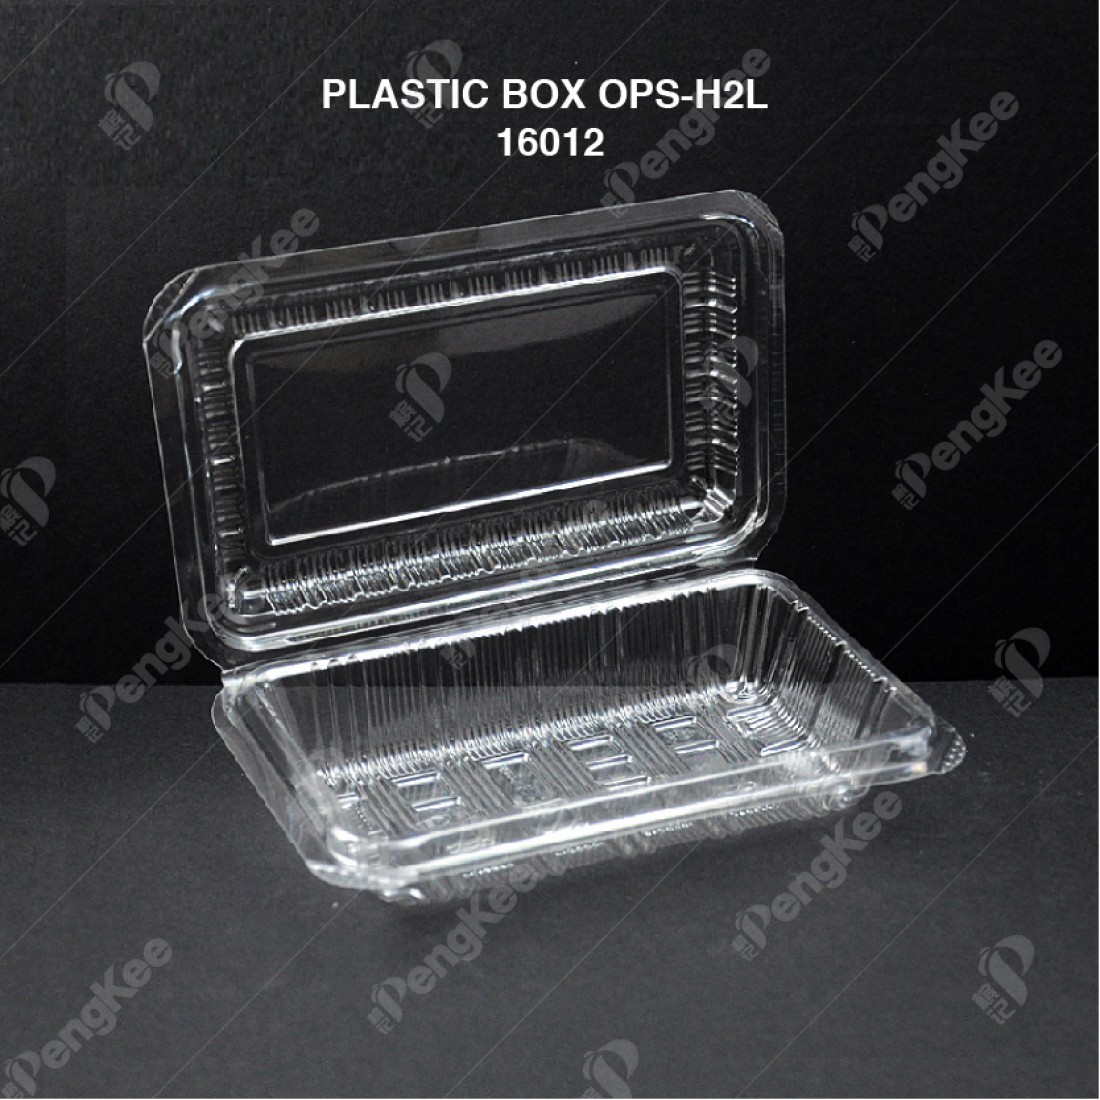 PLASTIC BOX OPS-H2L (50'S)